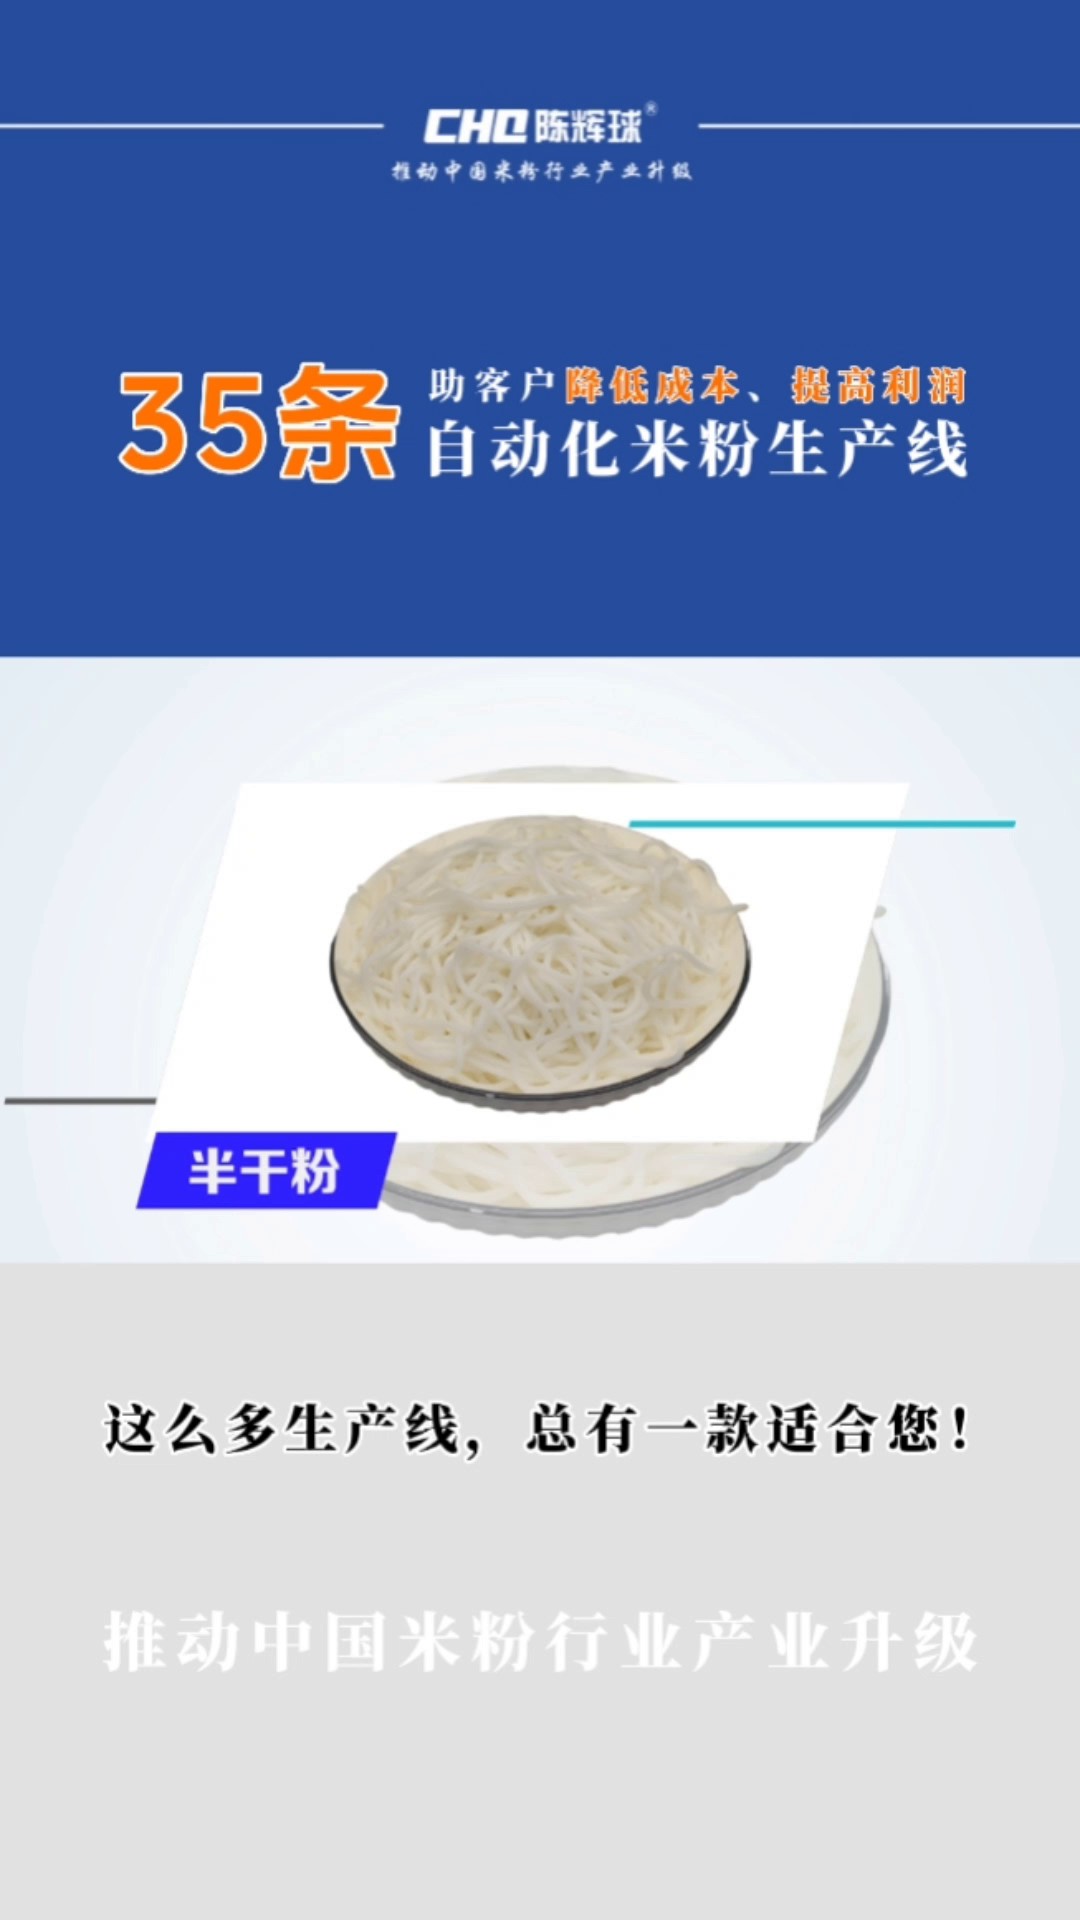 桂林米粉设备降低成本,米粉设备